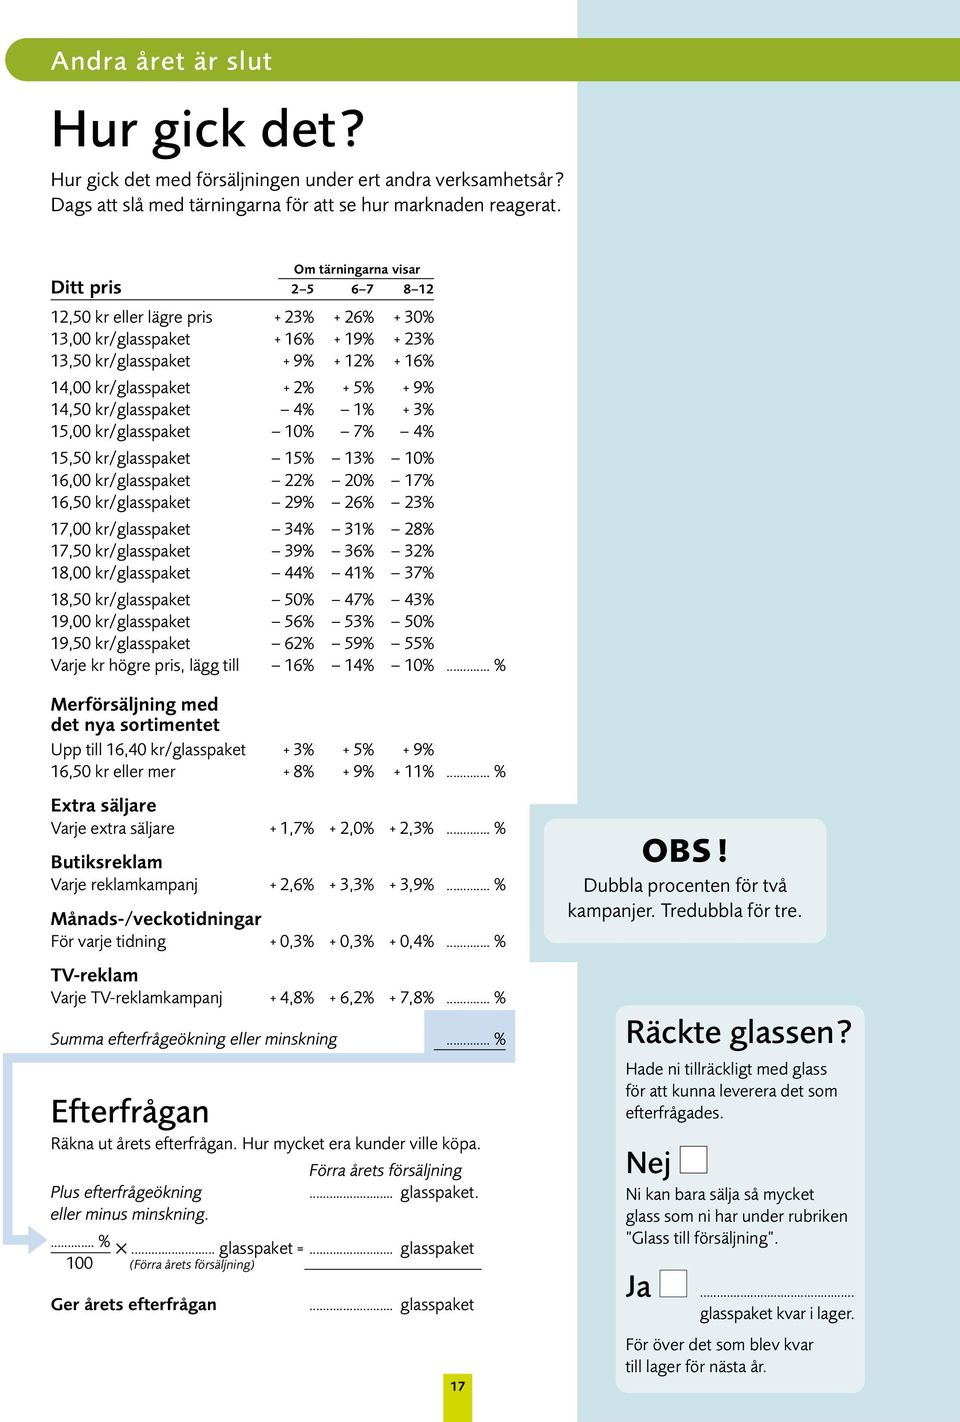 14,50 kr/glasspaket 4% 1% + 3% 15,00 kr/glasspaket 10% 7% 4% 15,50 kr/glasspaket 15% 13% 10% 16,00 kr/glasspaket 22% 20% 17% 16,50 kr/glasspaket 29% 26% 23% 17,00 kr/glasspaket 34% 31% 28% 17,50